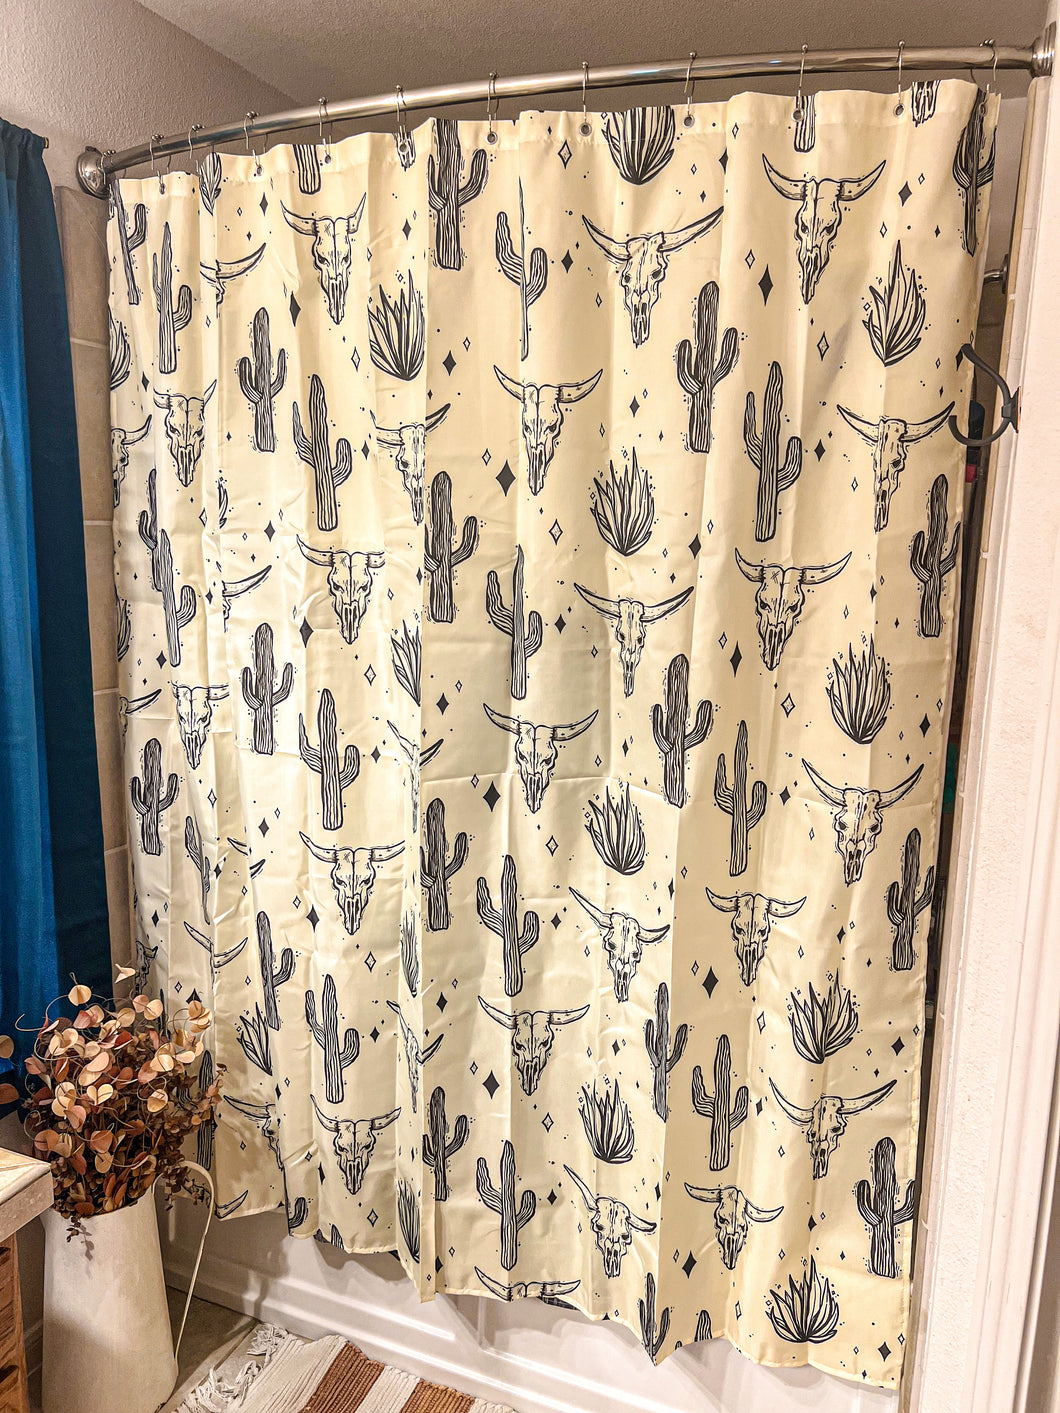 Cactus & Bull Skull Shower Curtain (Off White)